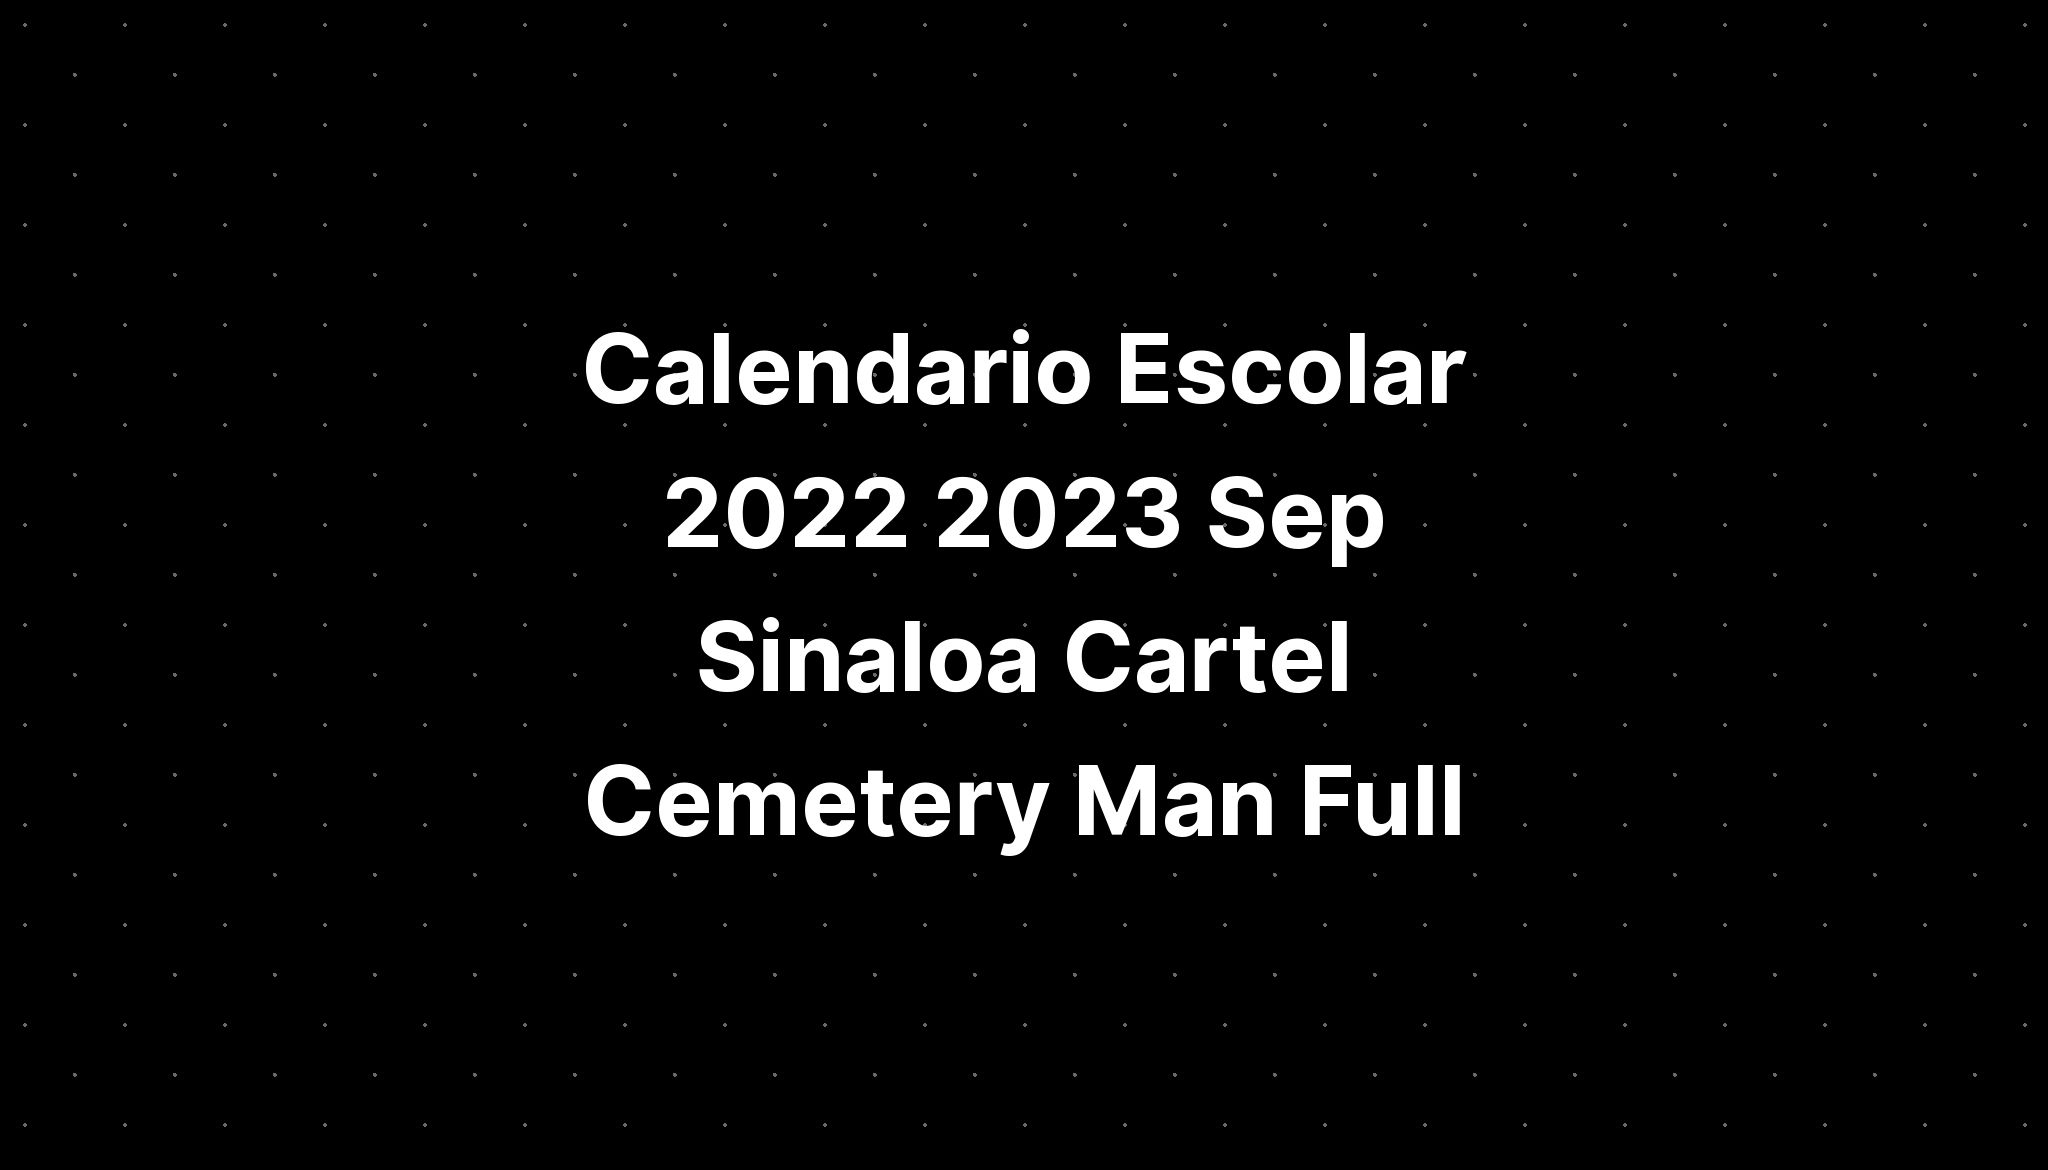 Calendario Escolar 2022 2023 Sep Sinaloa Cartel Cemetery Man Full ...